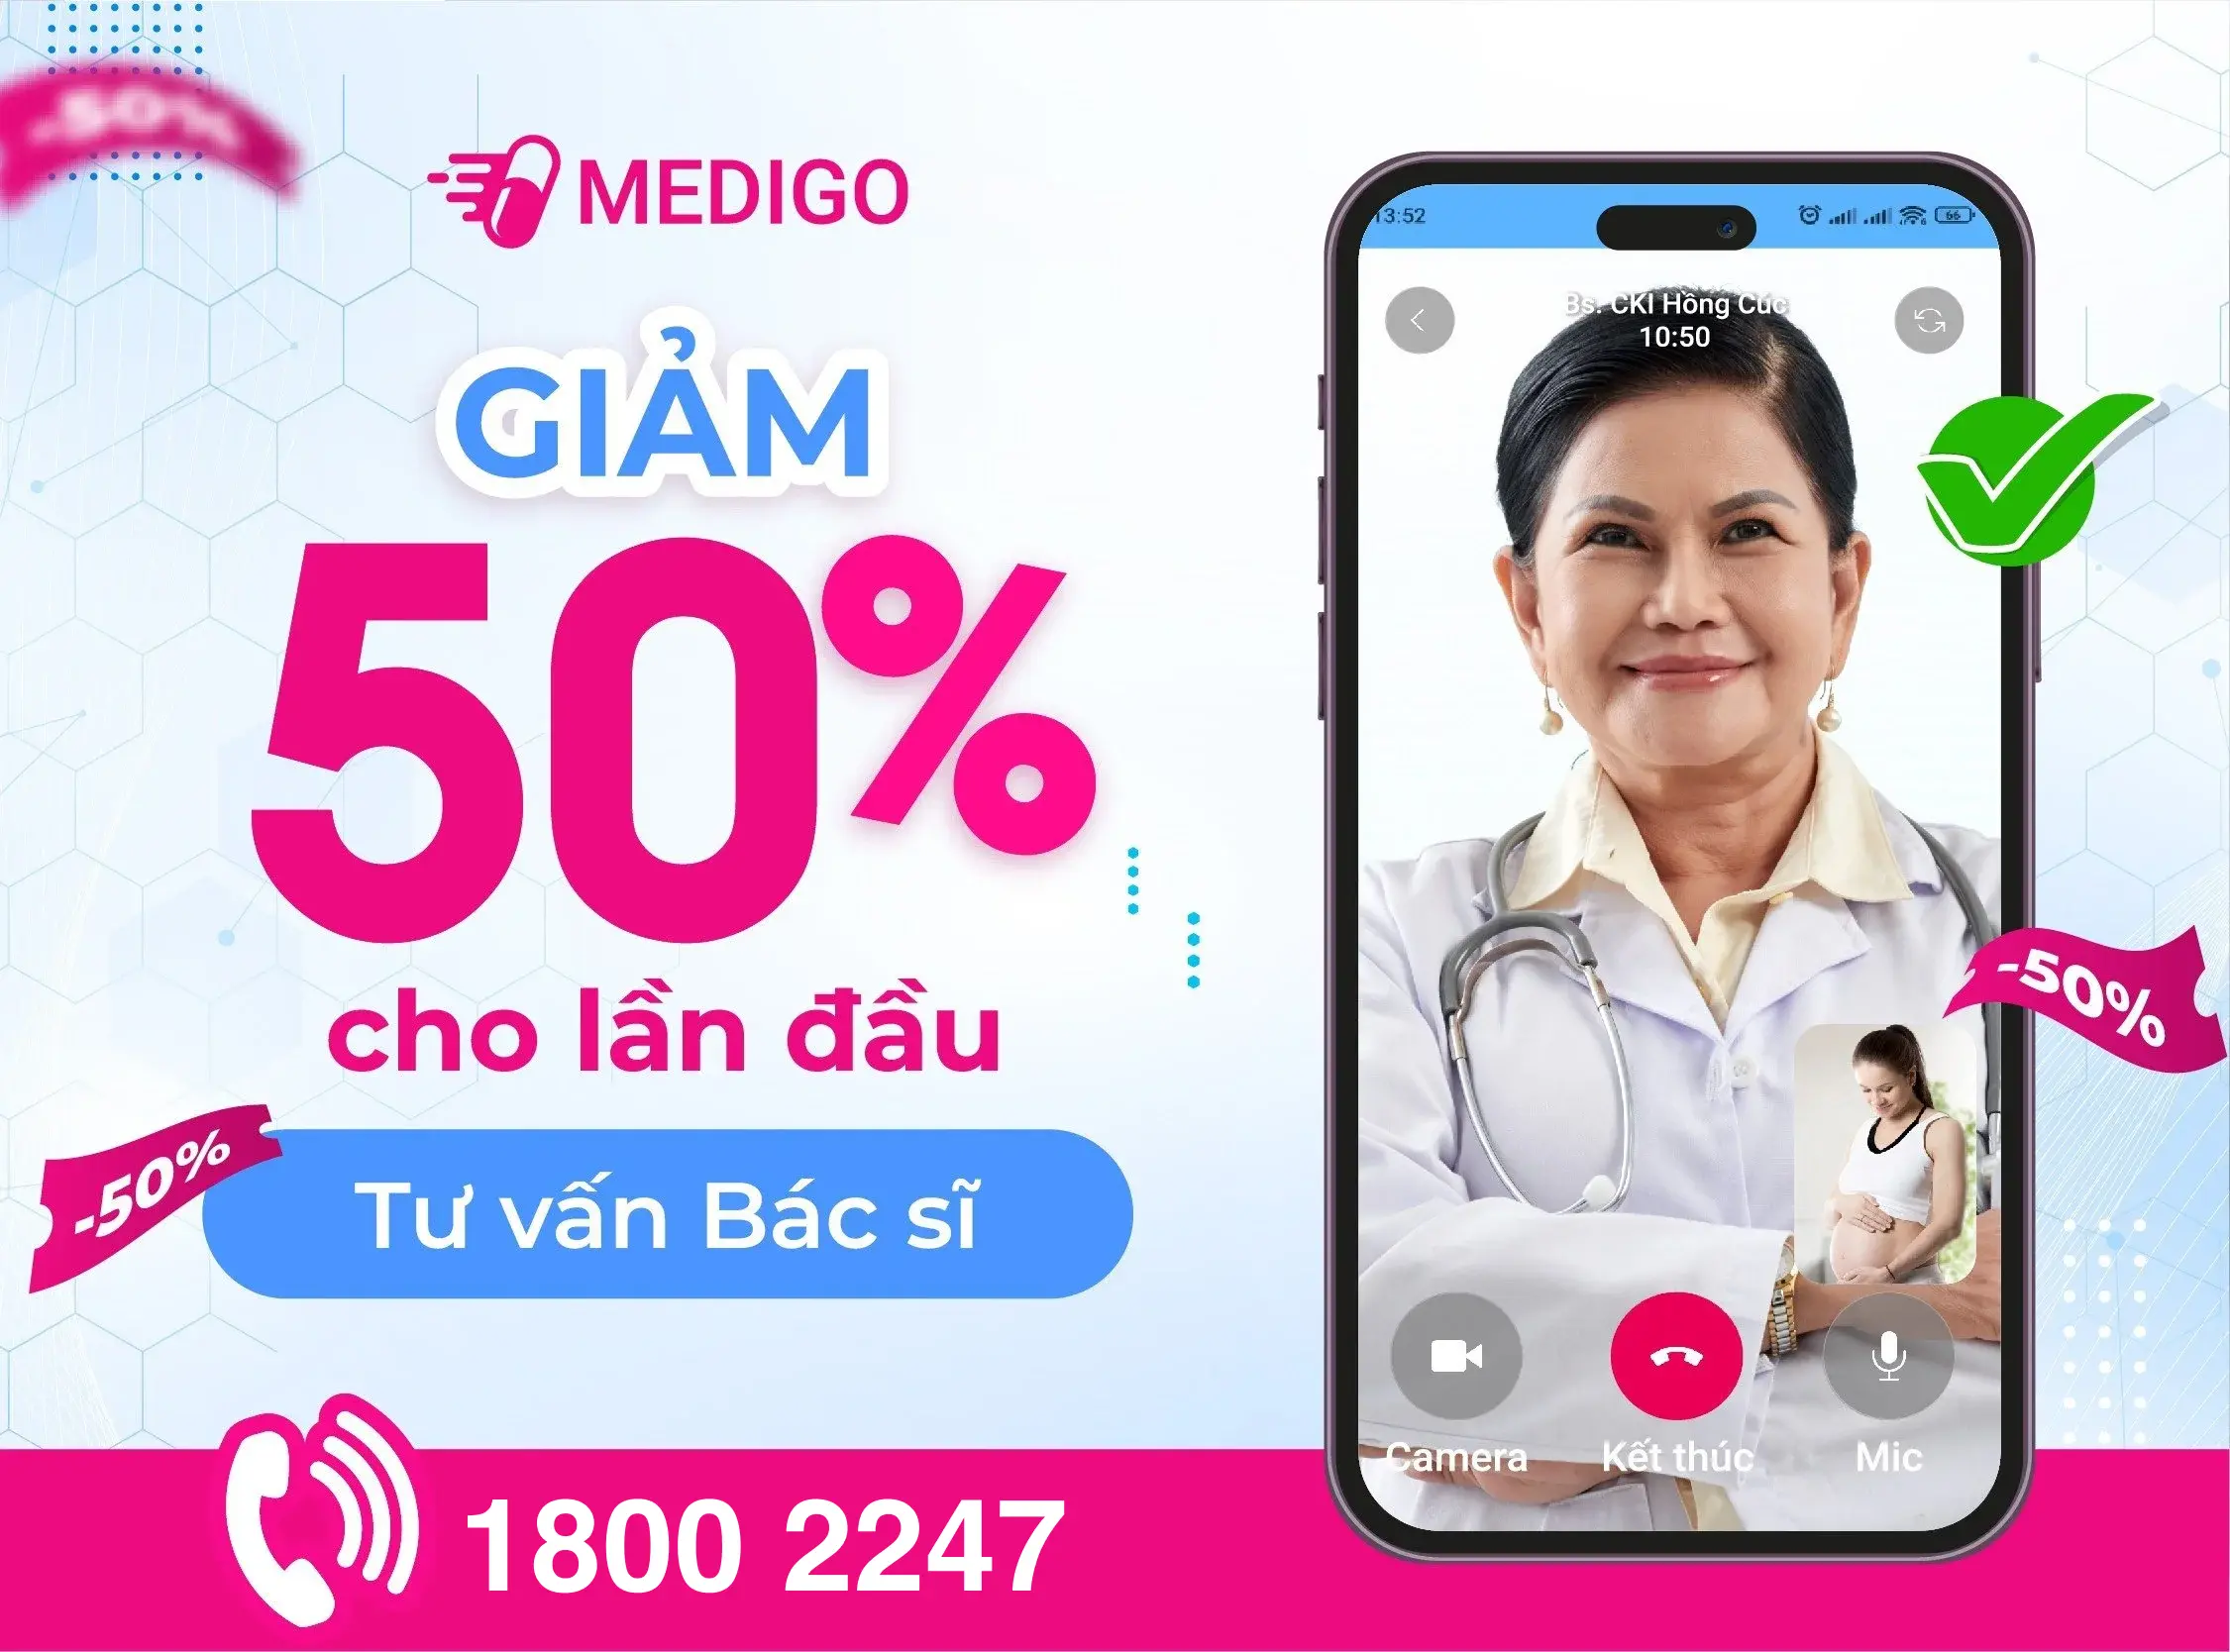 Dịch vụ bác sĩ online Medigo